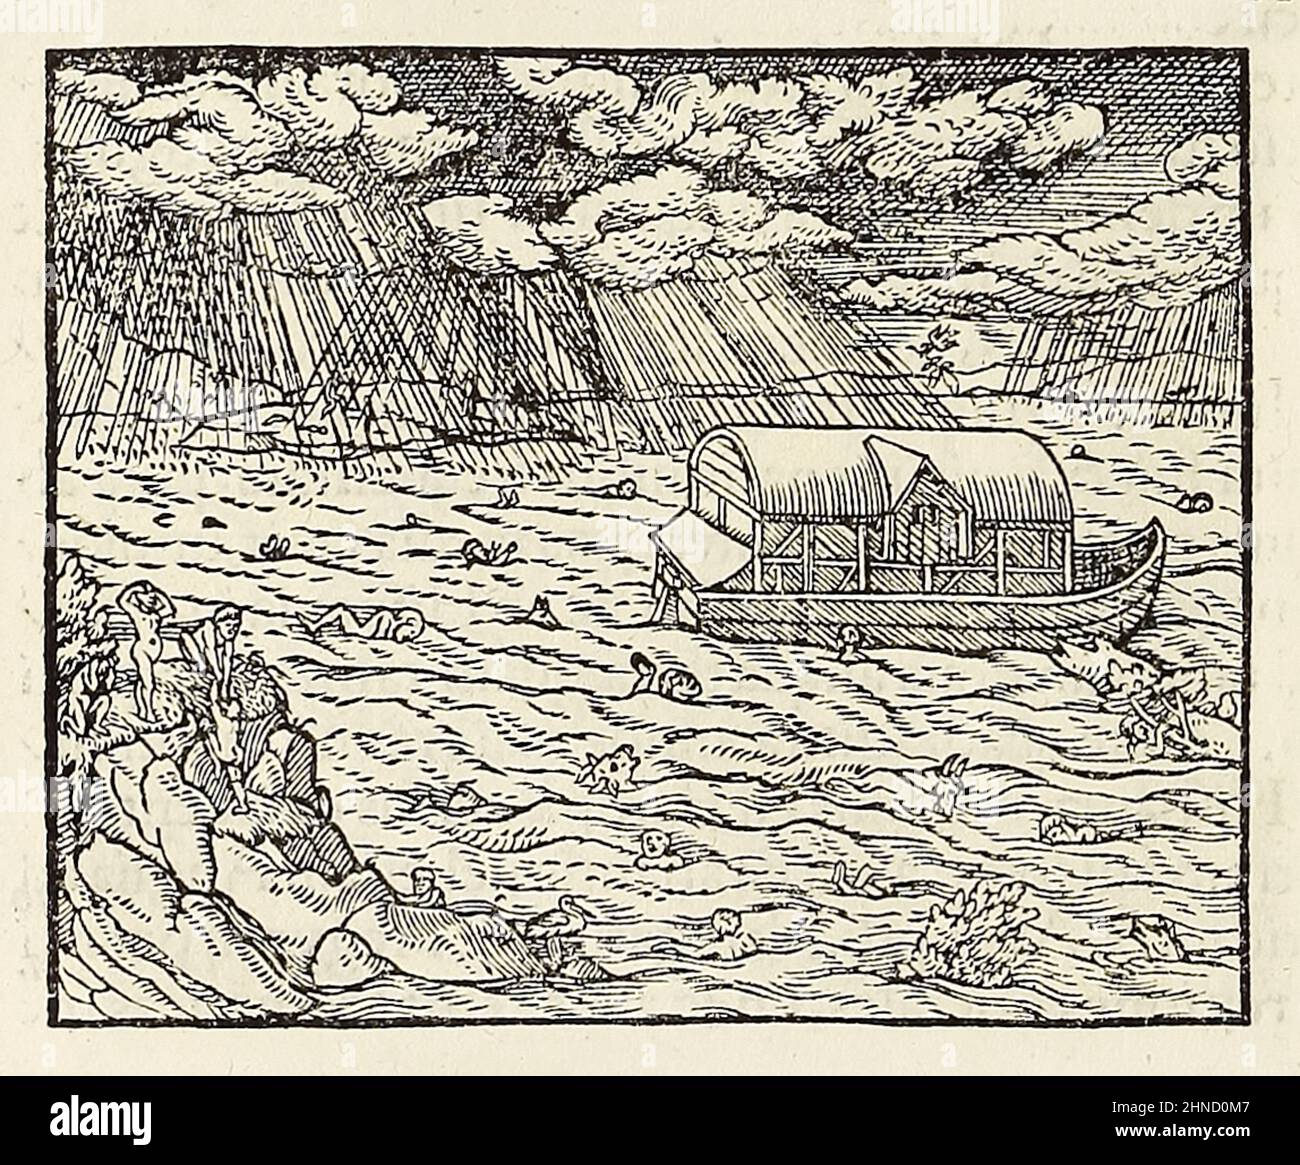 L’Arca di Noè e il diluvio, legno tagliato dall’edizione 1550 di ‘Cosmographia’ di Sebastian Munster (1488-1552). Fotografia dell'edizione originale latina del 1550 della 'Cosmographia'. Foto Stock